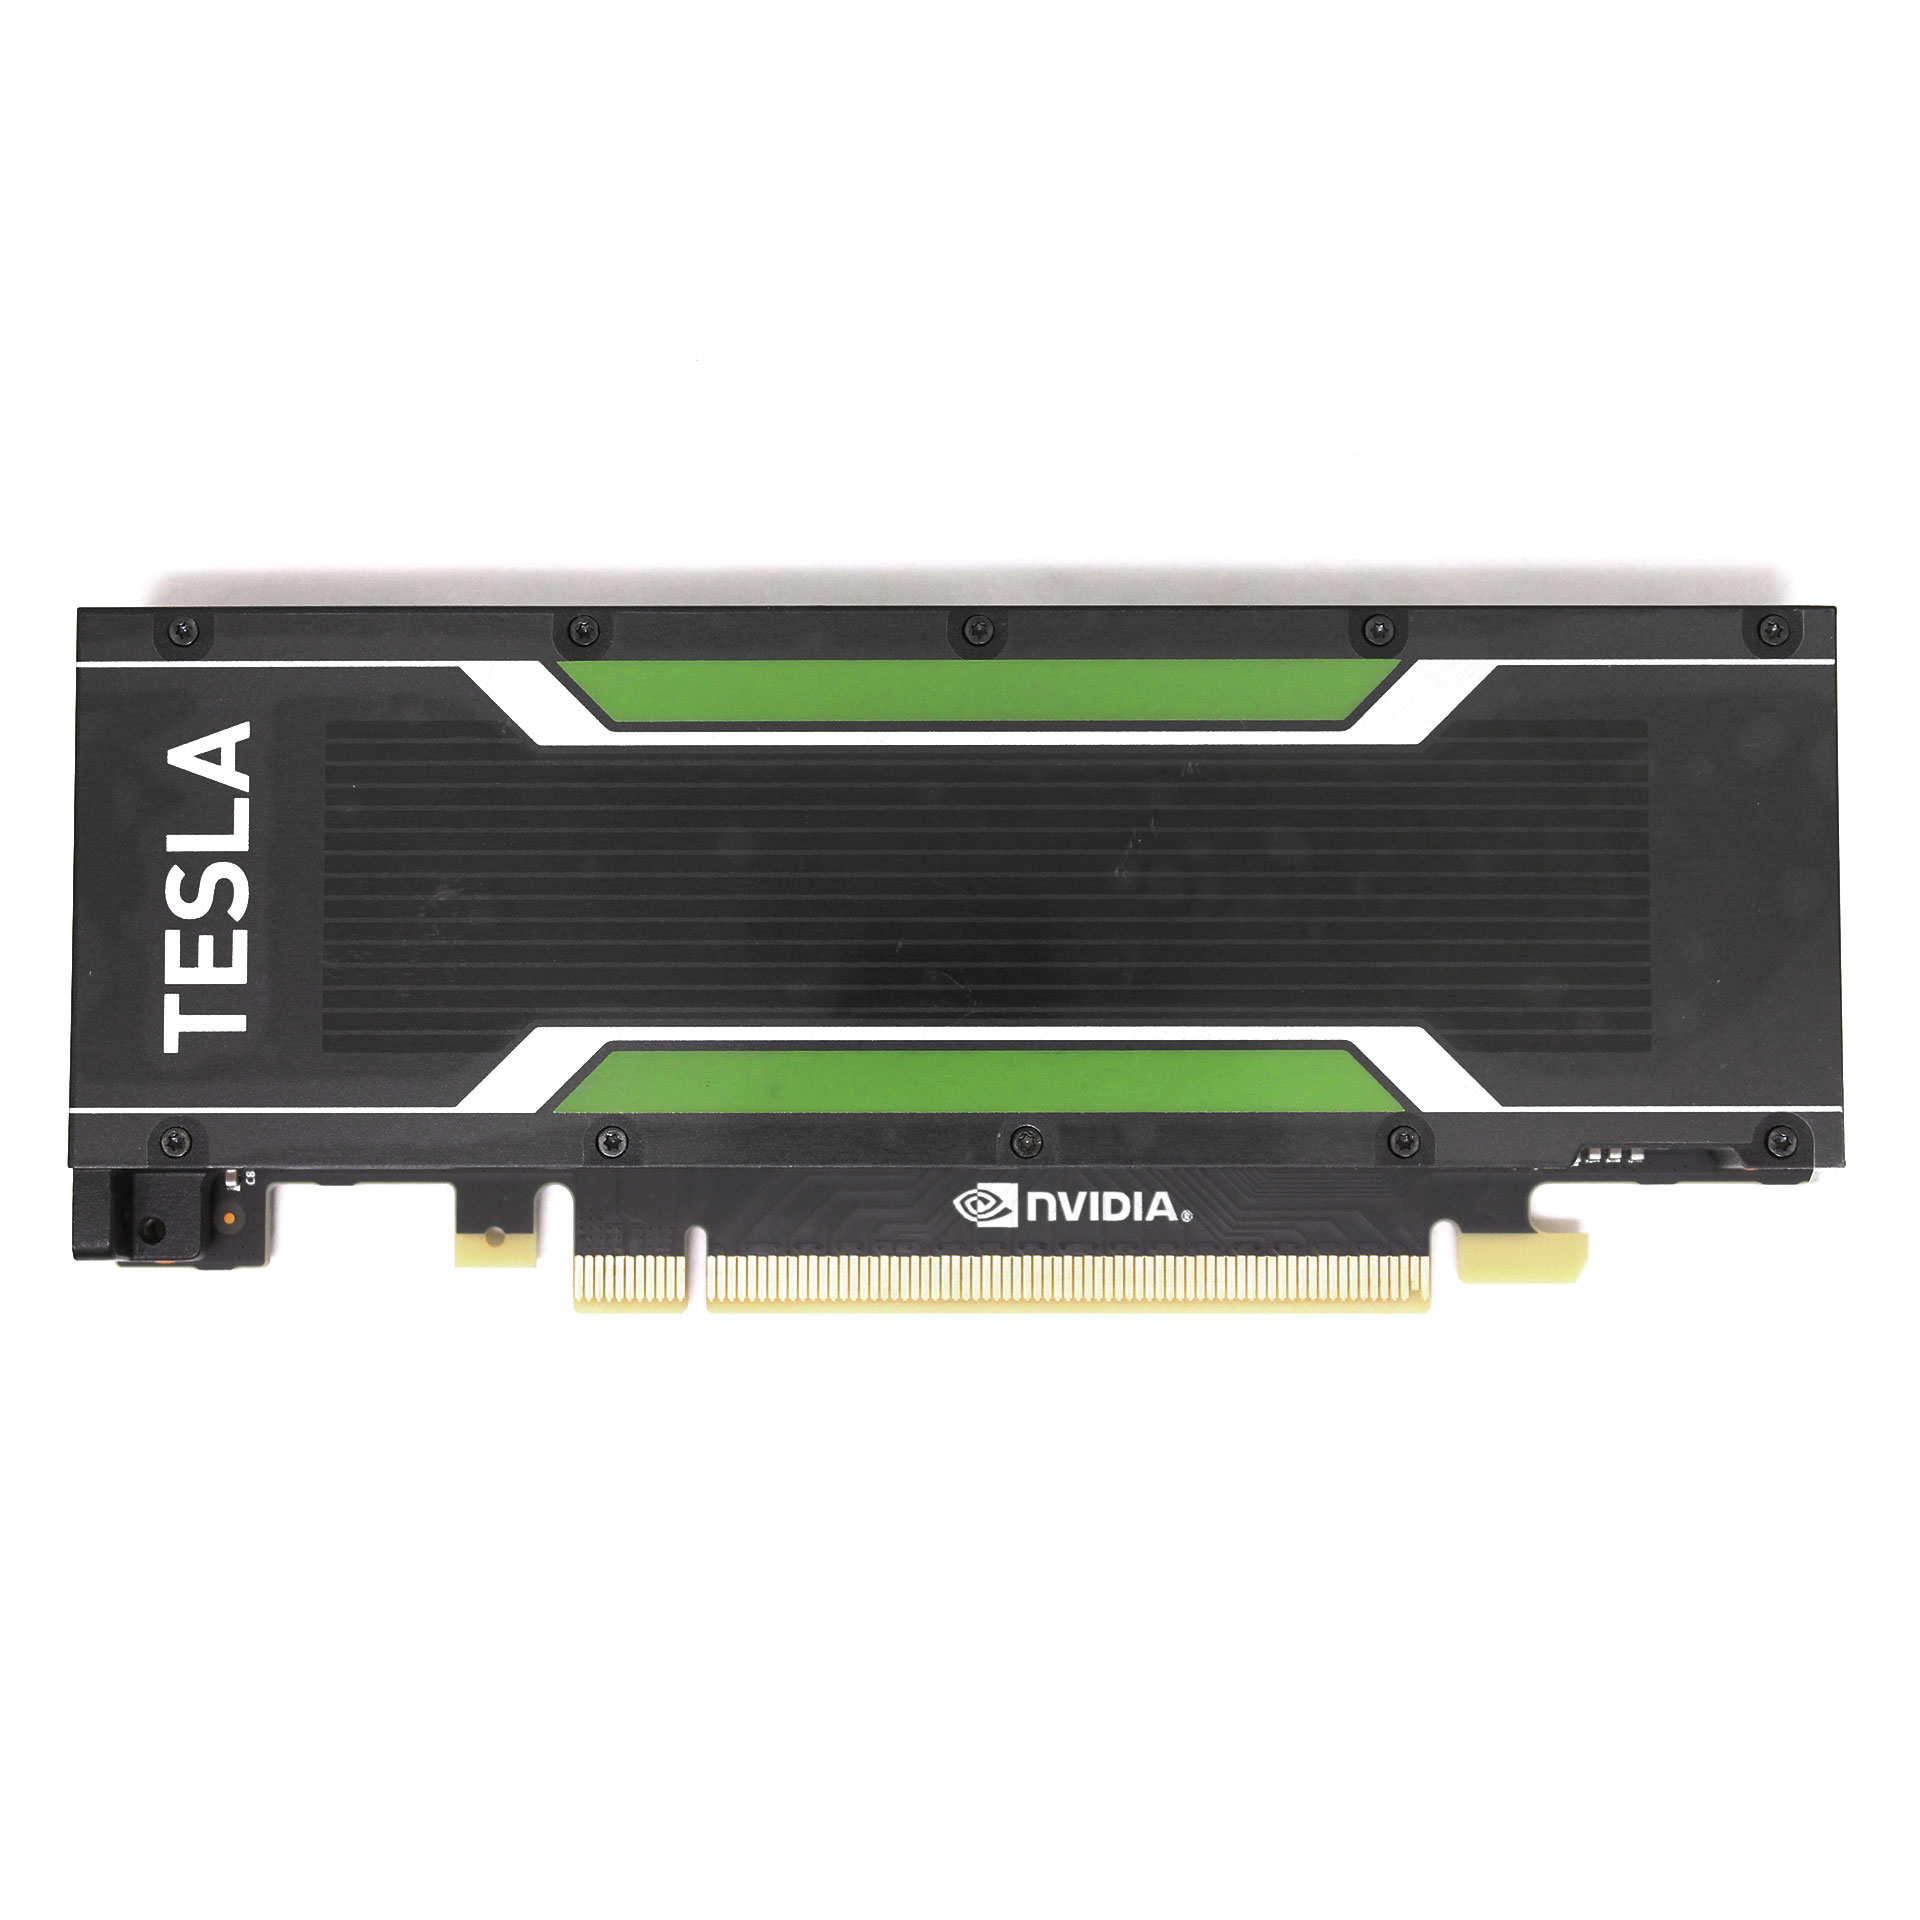 NVIDIA TESLA M4 VIDEO CARD GPU 4GB GDDR5 699-2G304-0200-110 PCIE